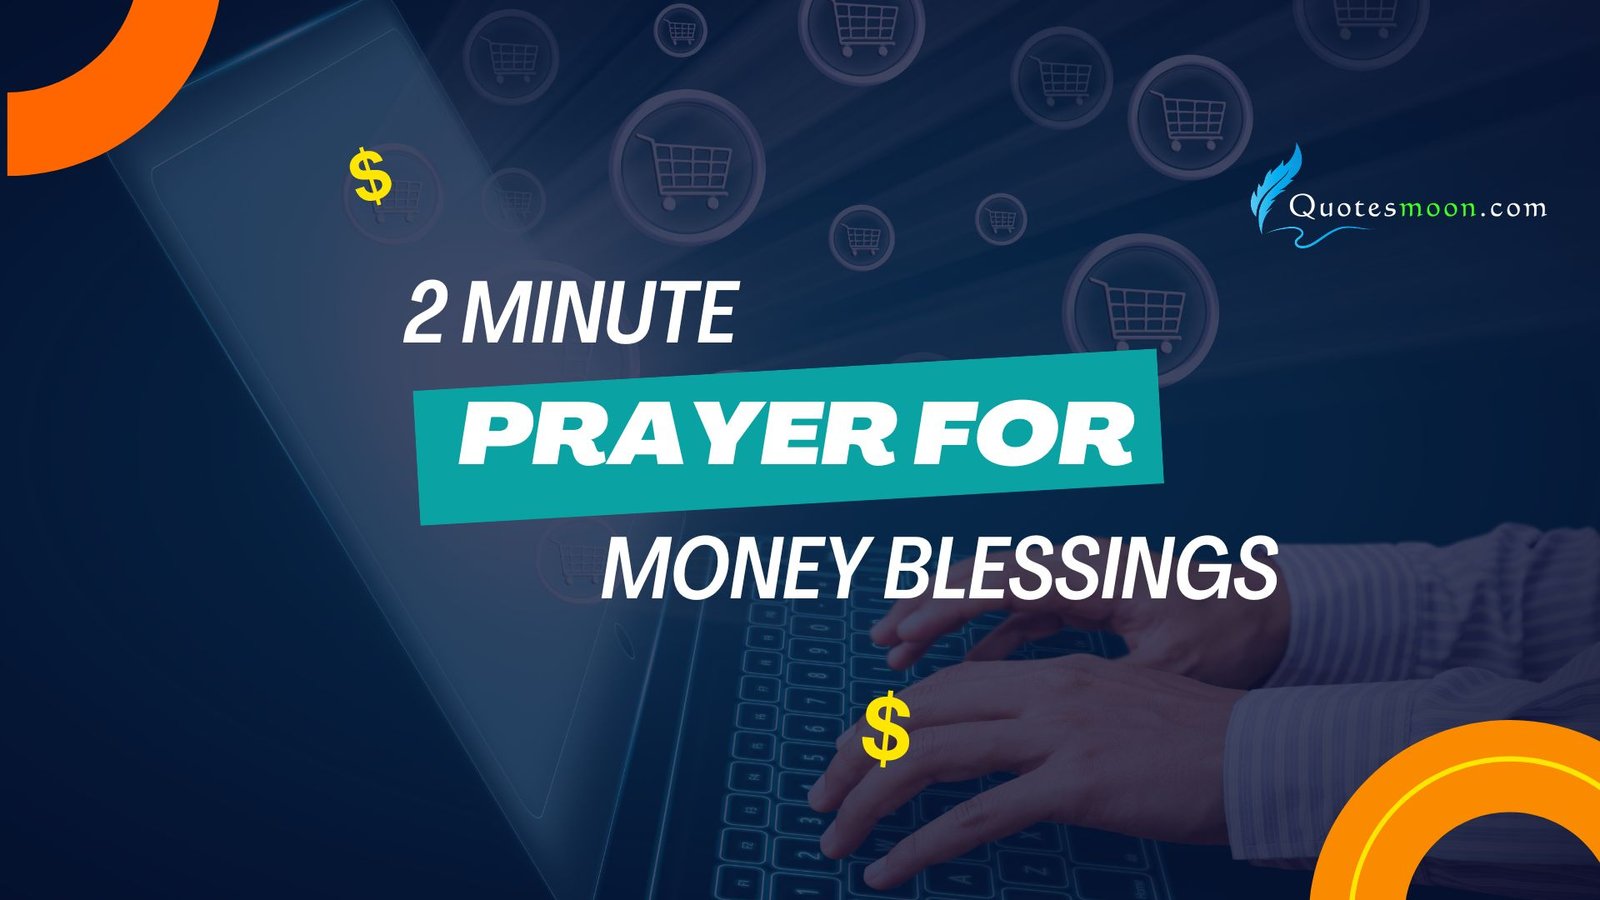 2 minute prayer for money blessing